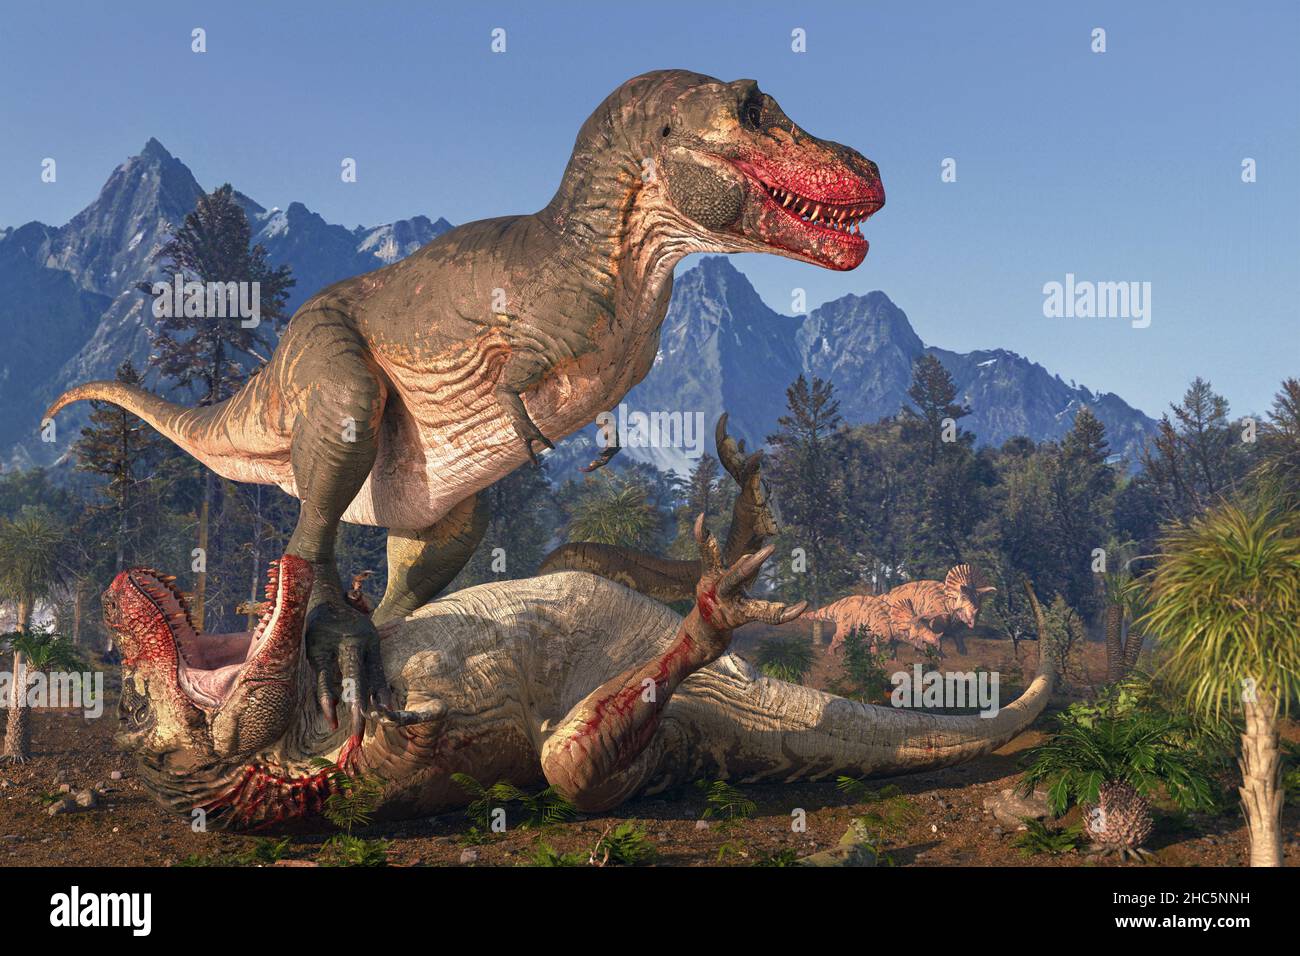 Illustrazione di due tirannosaurus rex dinosauri in lotta. Questo dinosauro con teropodi bipedali era uno dei più grandi predatori mai esistiti, misurava oltre 12 metri di lunghezza dalla testa alla coda e pesava fino a 8 tonnellate. Si pensa di avere combinato la caccia e il lavaggio per nutrirsi. I suoi fossili si trovano in Nord America e risalgono a circa 67 milioni di anni fa, durante il periodo Cretaceo. Spesso noto come T-Rex. Due triceratop guardano da lontano. Foto Stock